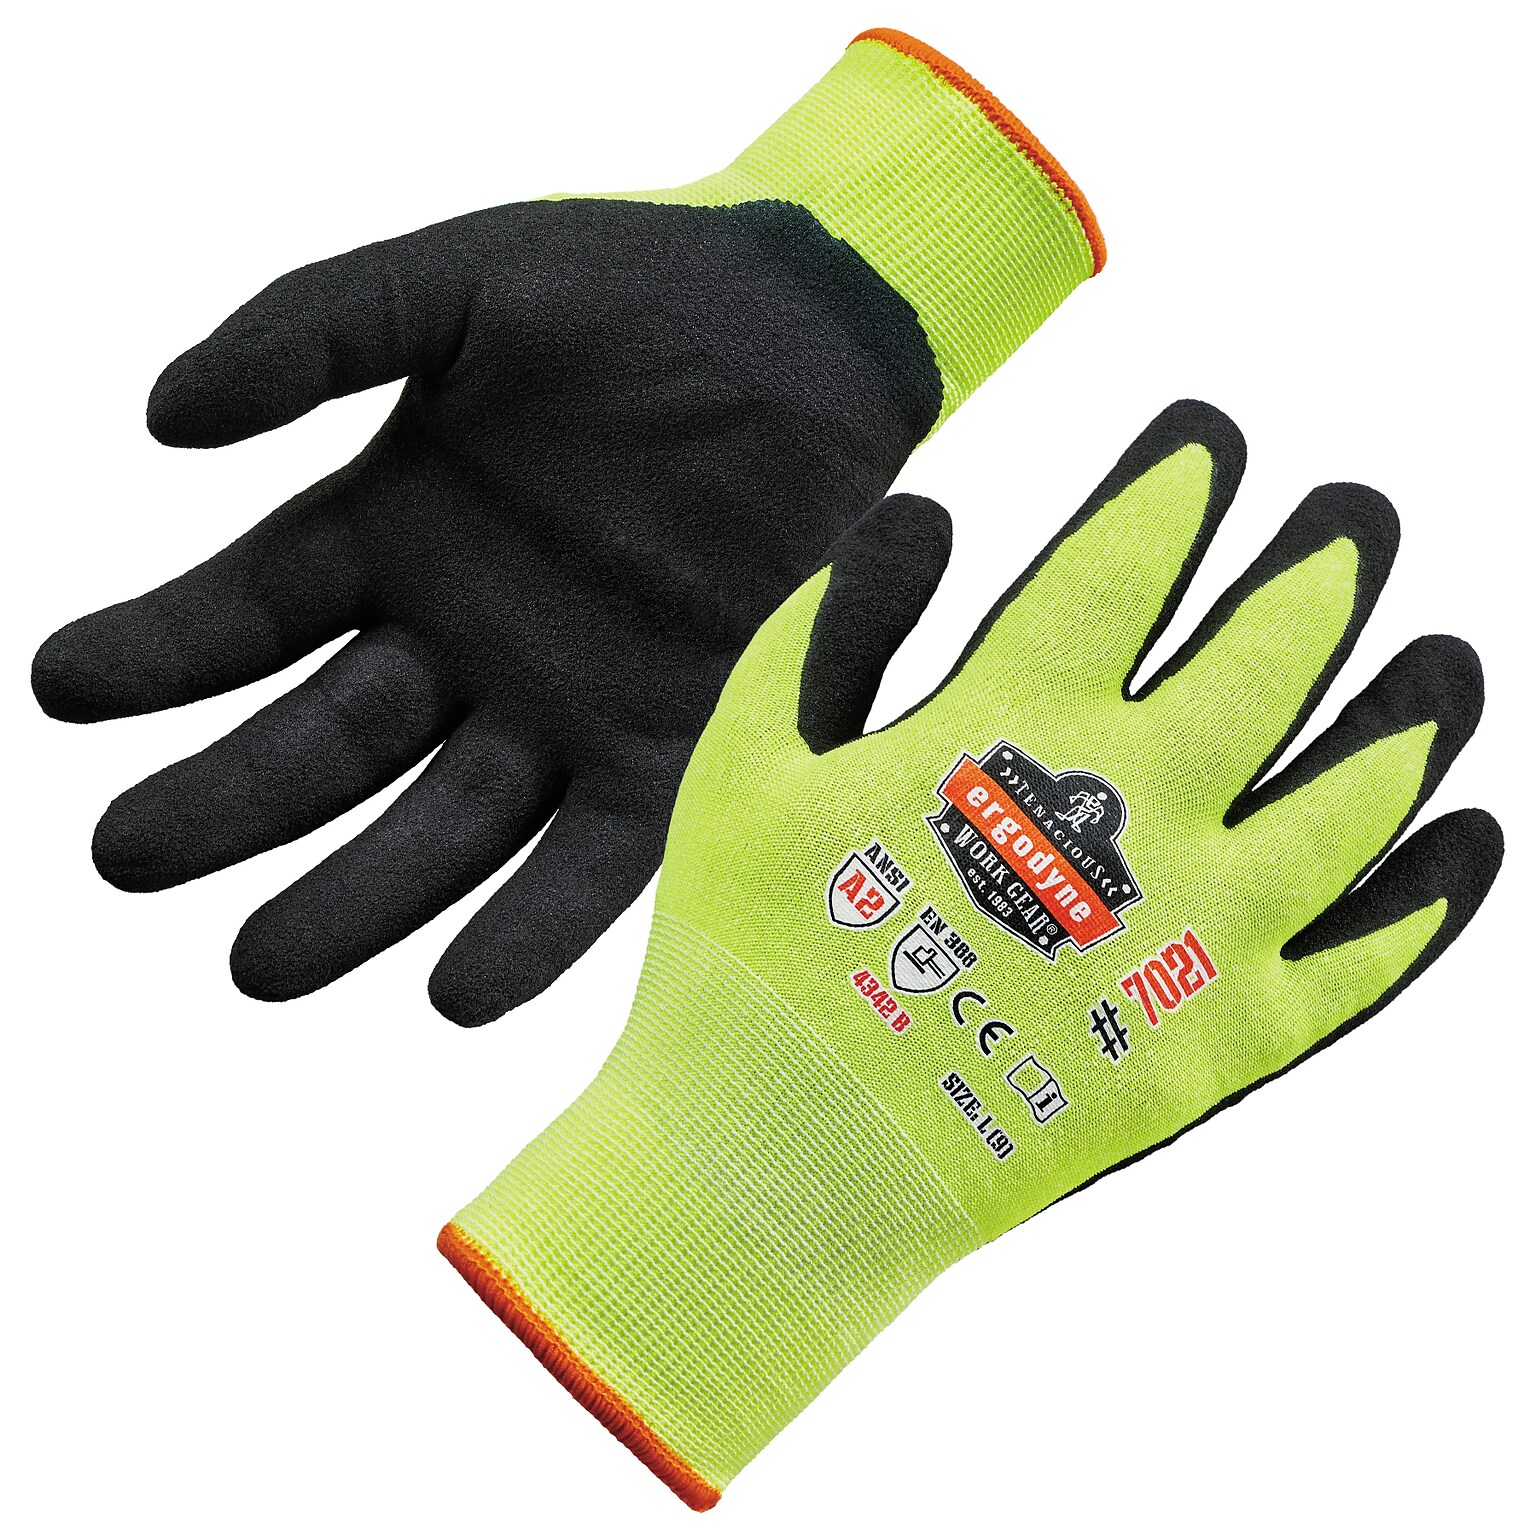 Ergodyne ProFlex 7021 Hi-Vis Nitrile Coated Cut-Resistant Gloves, ANSI A2, Wet Grip, Lime, Large, 1 Pair (17964)